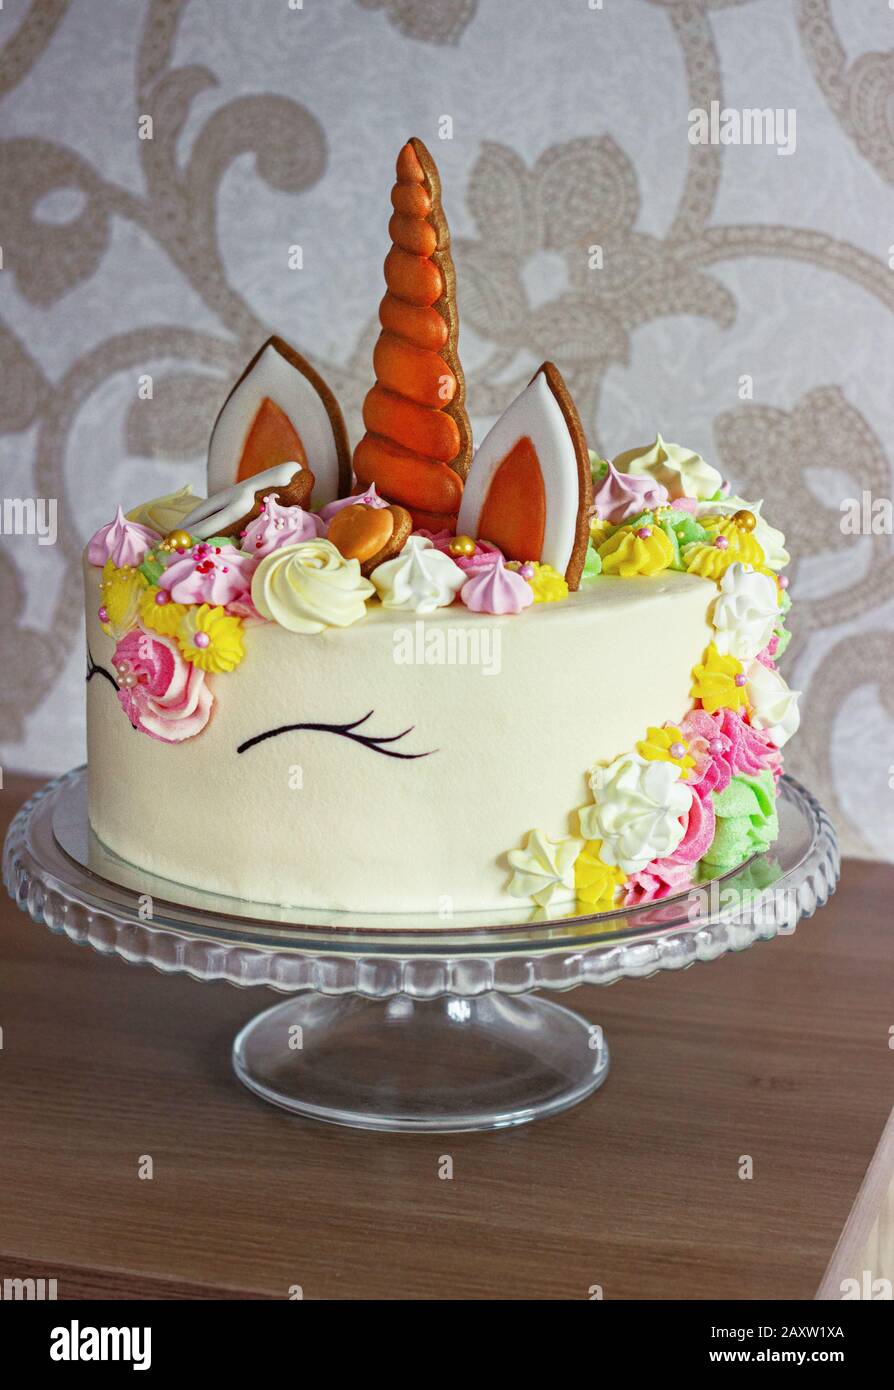 Ein schöner heller Kuchen in Form von Fantasy-Einhorn. Das Konzept eines festlichen Desserts zum Kindergeburtstag Stockfoto